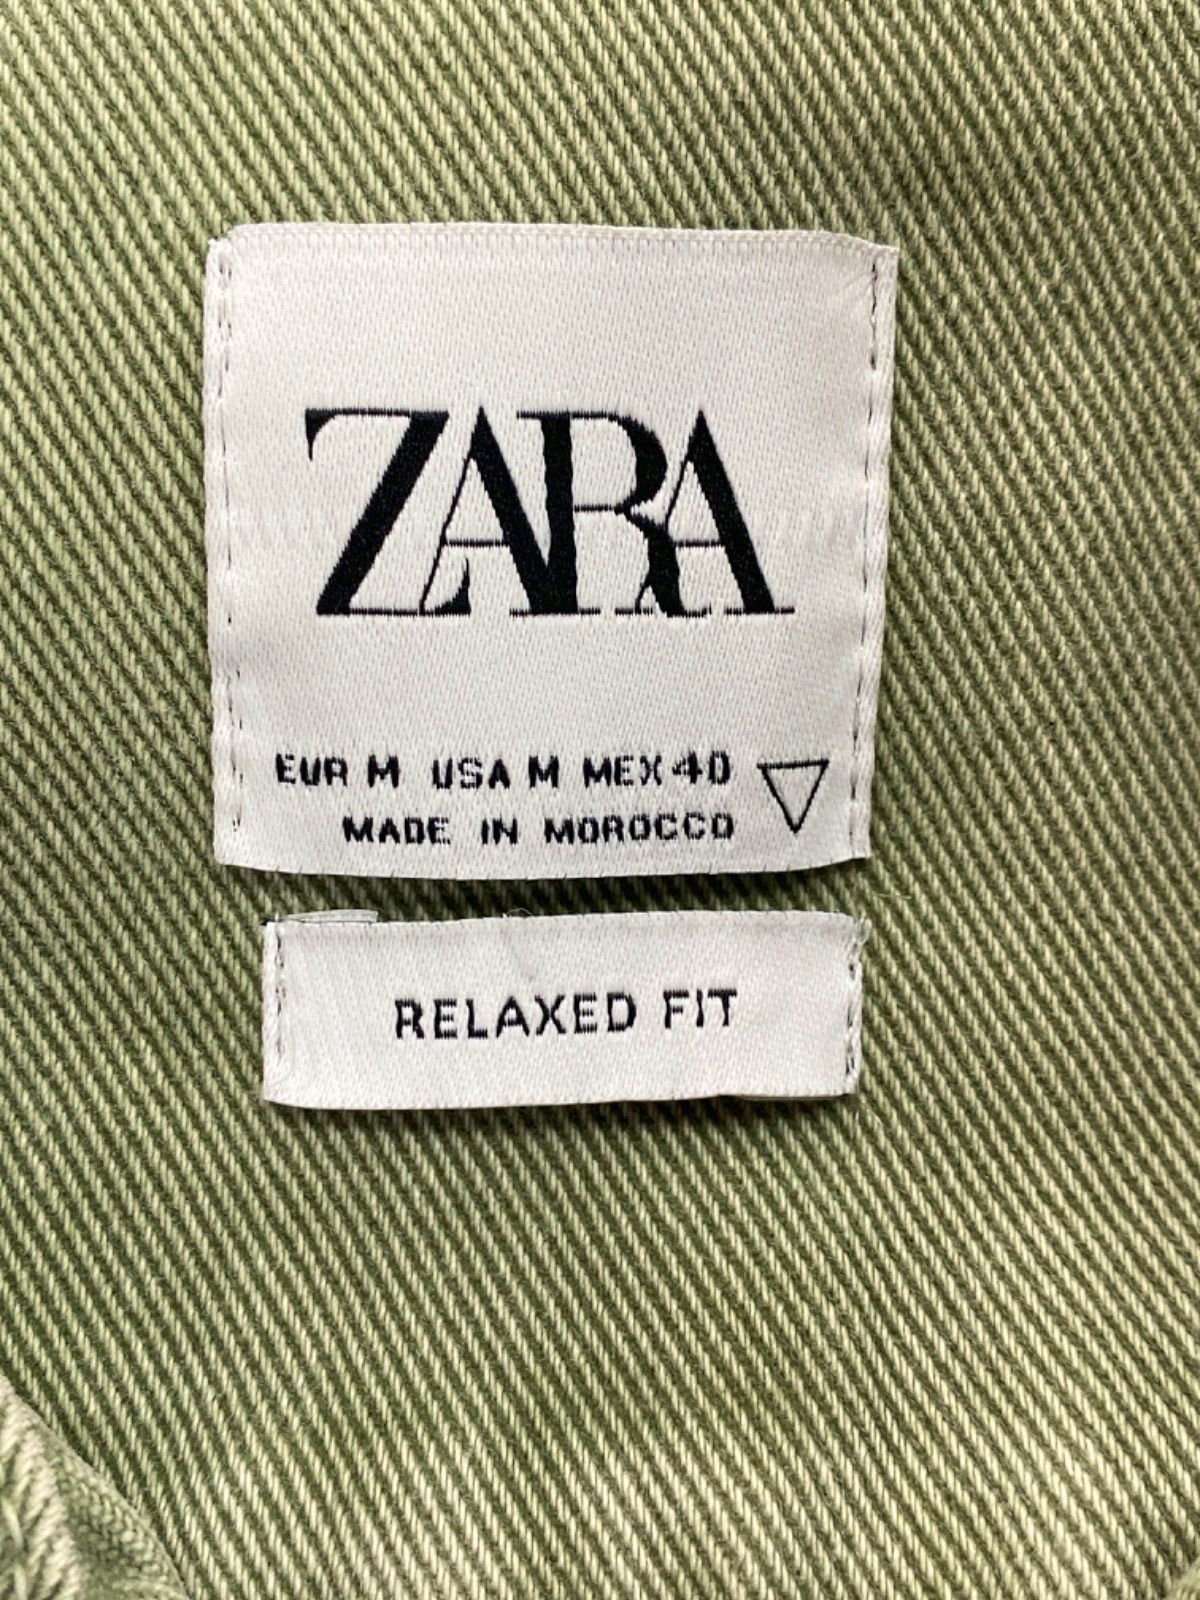 Zara Green Relaxed Fit Shirt UK M